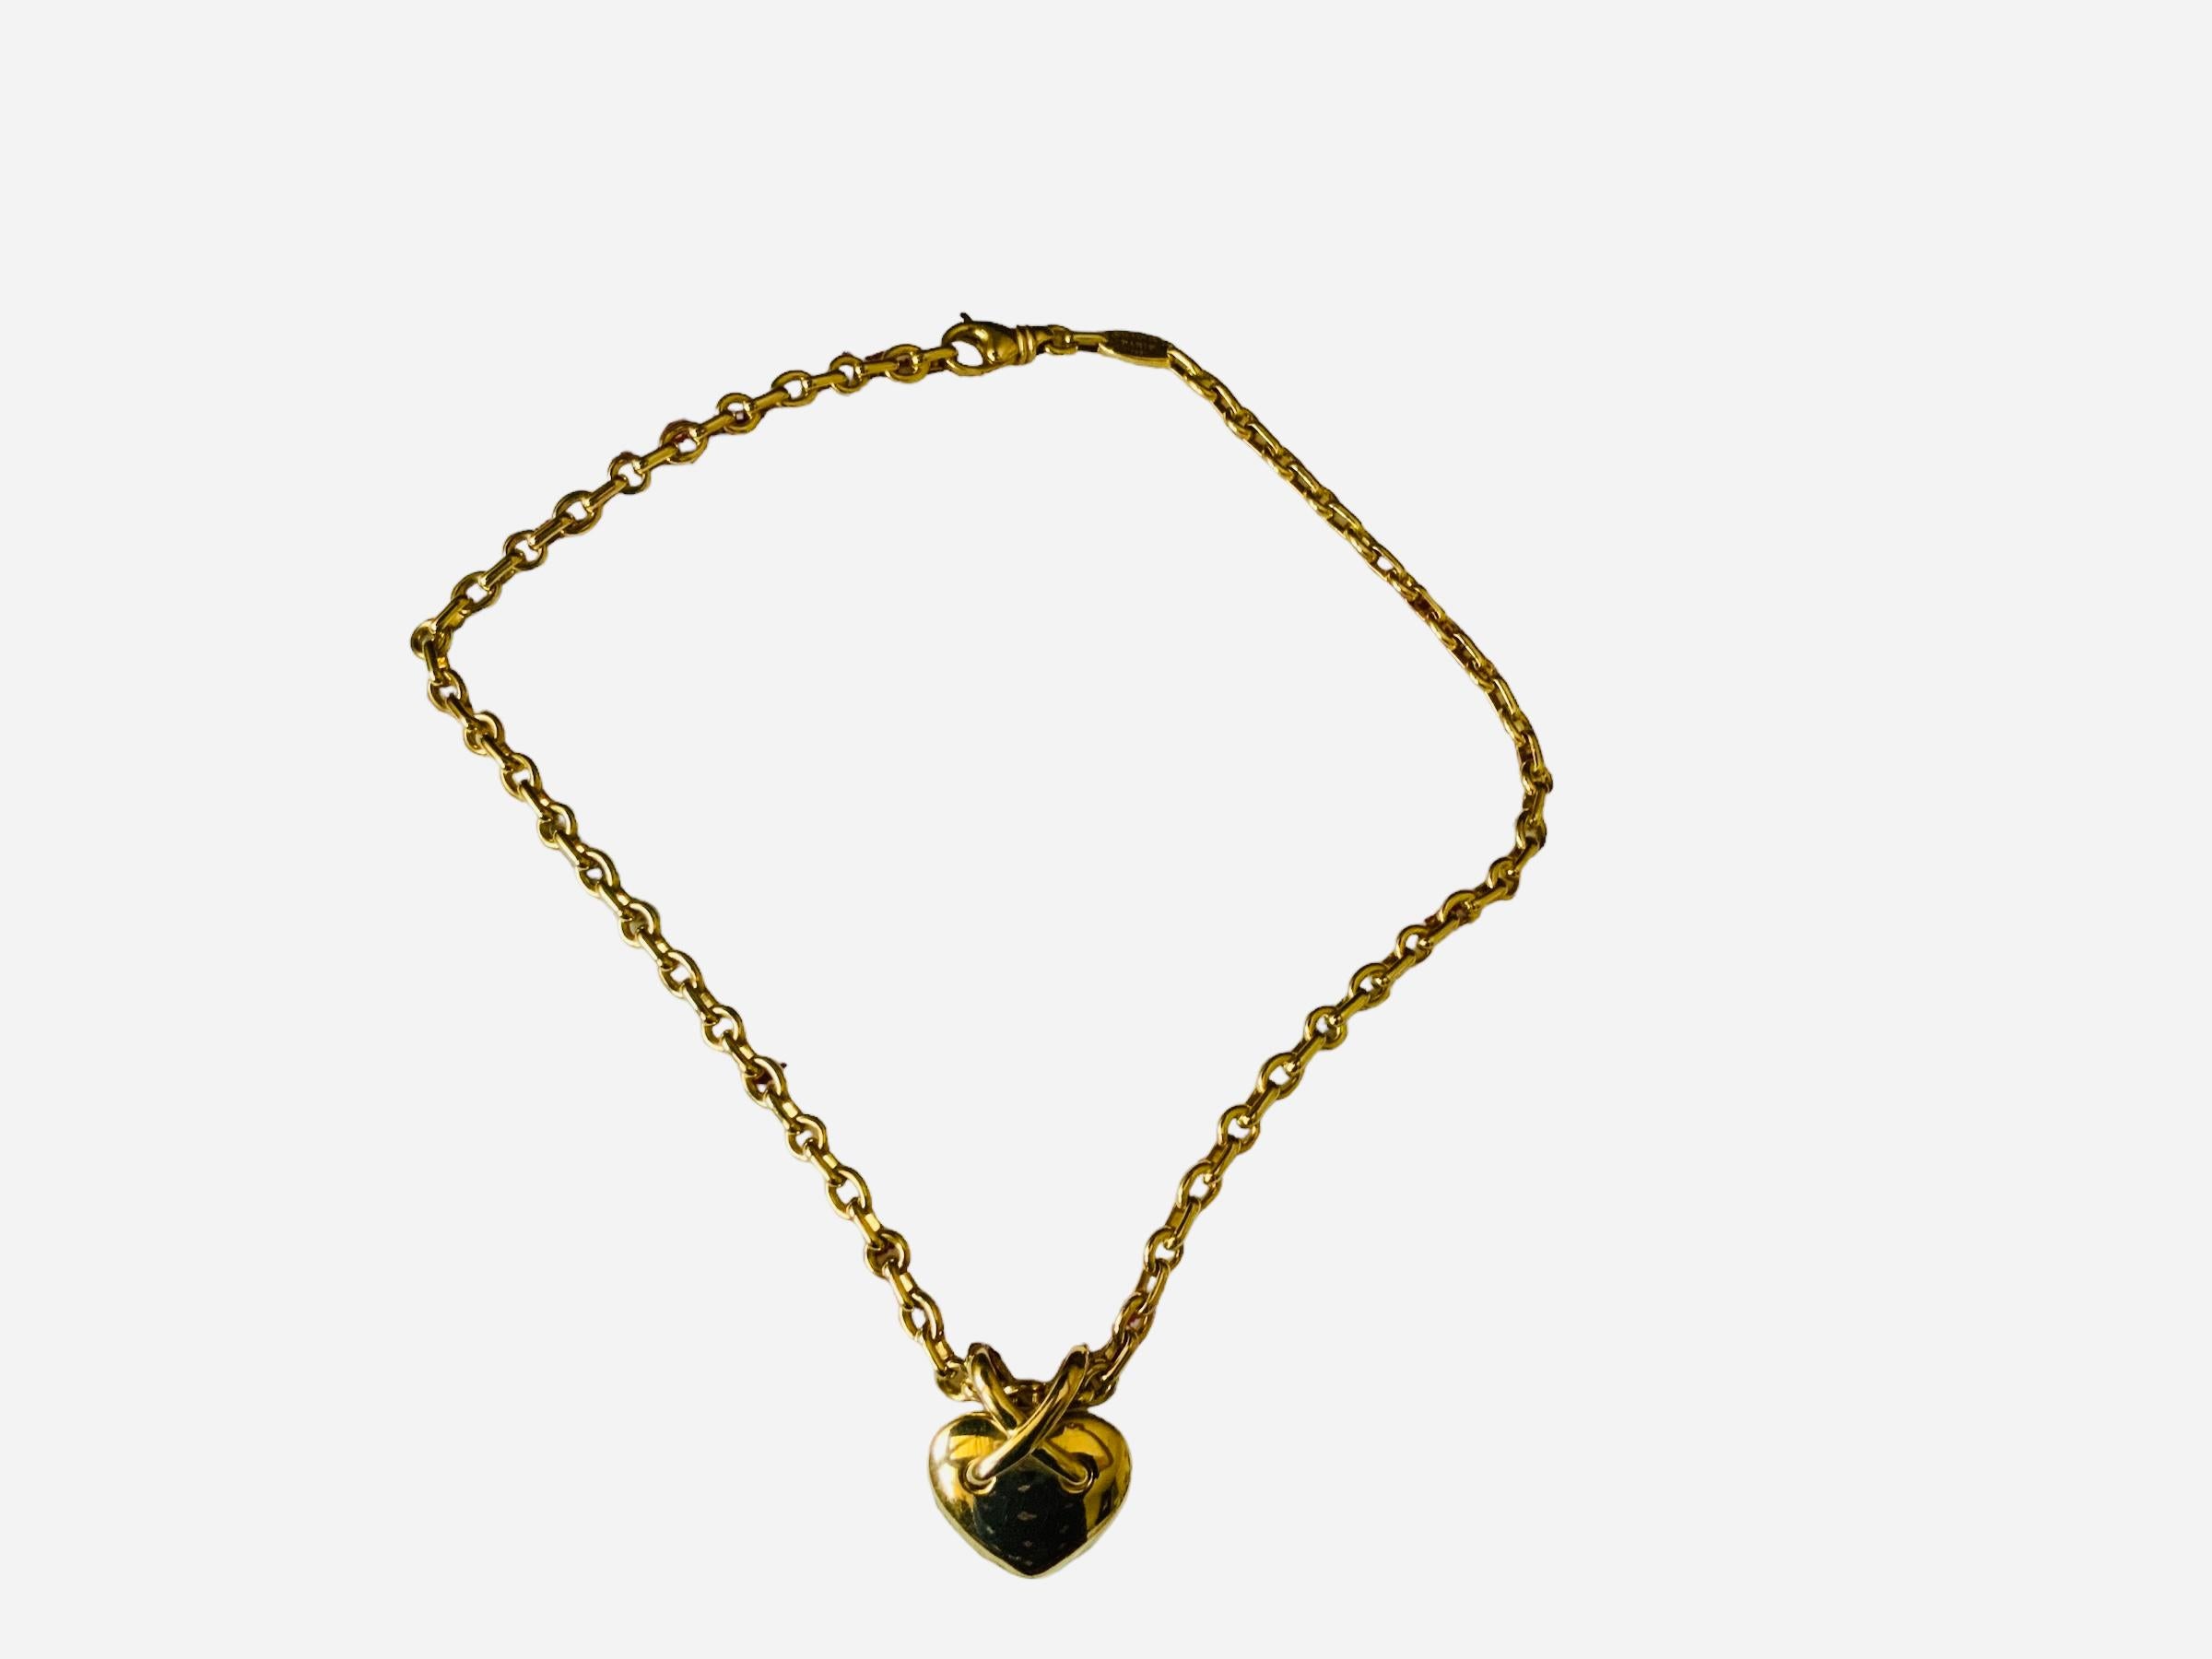  Chaumet, Paris Liens Heart 750 Gold Necklace  For Sale 1